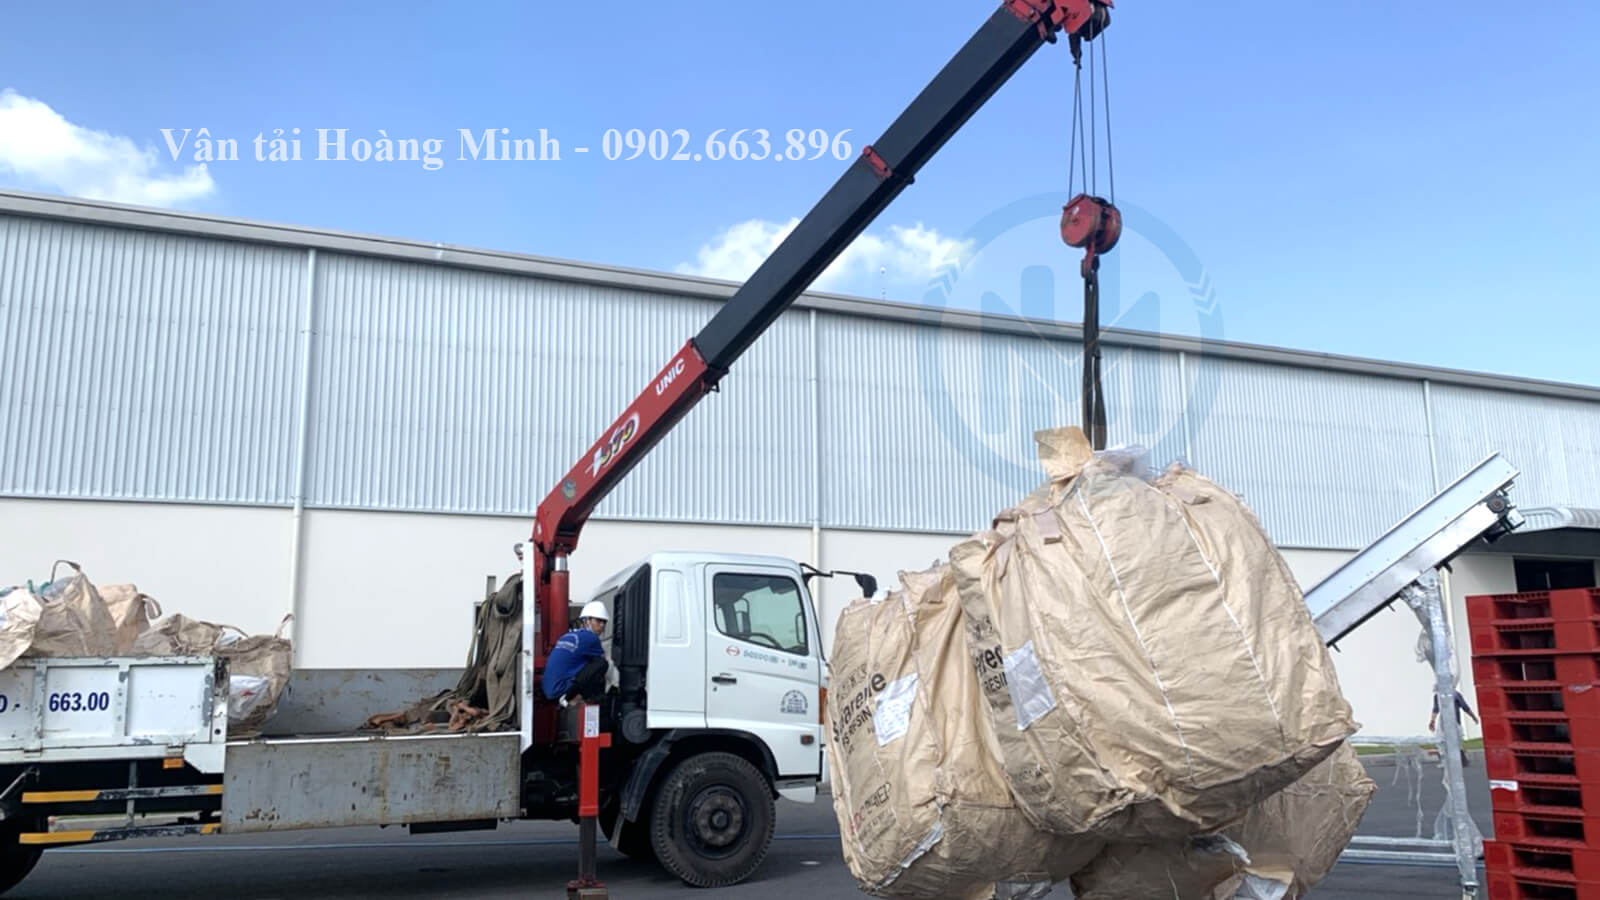 Hình ảnh xe cẩu 15 tấn di dời hàng hoá cho khách tại Tây Ninh.jpg